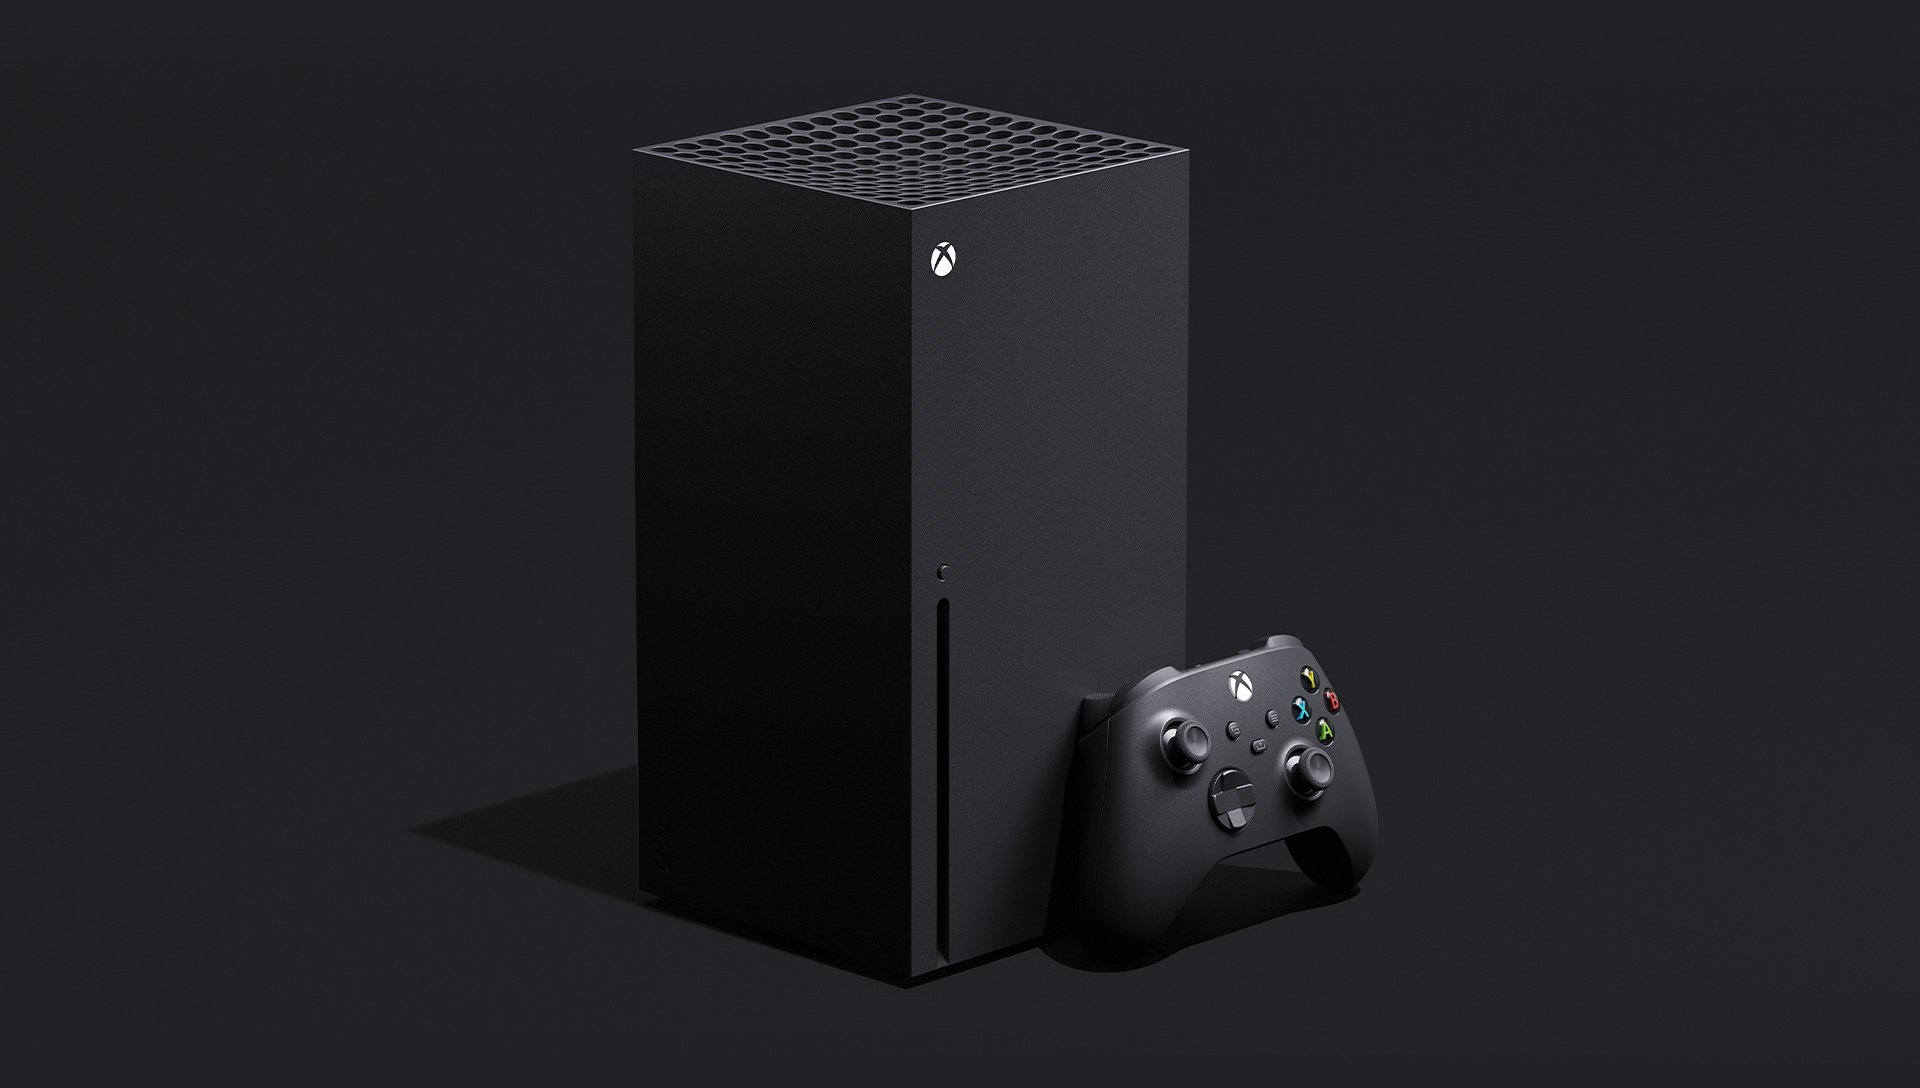 Нова ігрова консоль Xbox Series X від Microsoft вийде в 2020 році. А що покаже Sony?